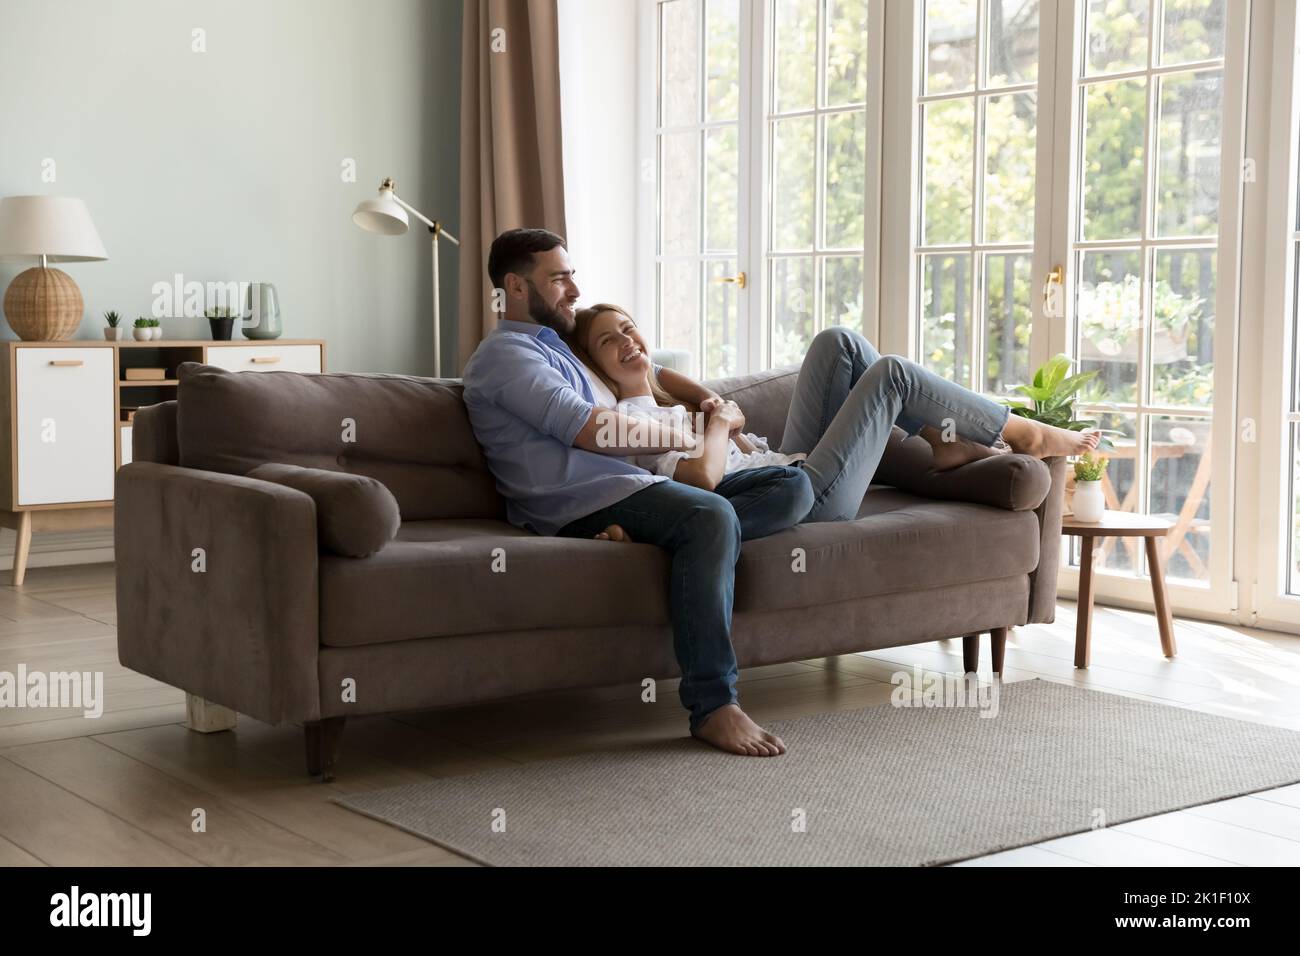 Glückliches junges Familienpaar, das sich auf einer bequemen Couch entspannt Stockfoto